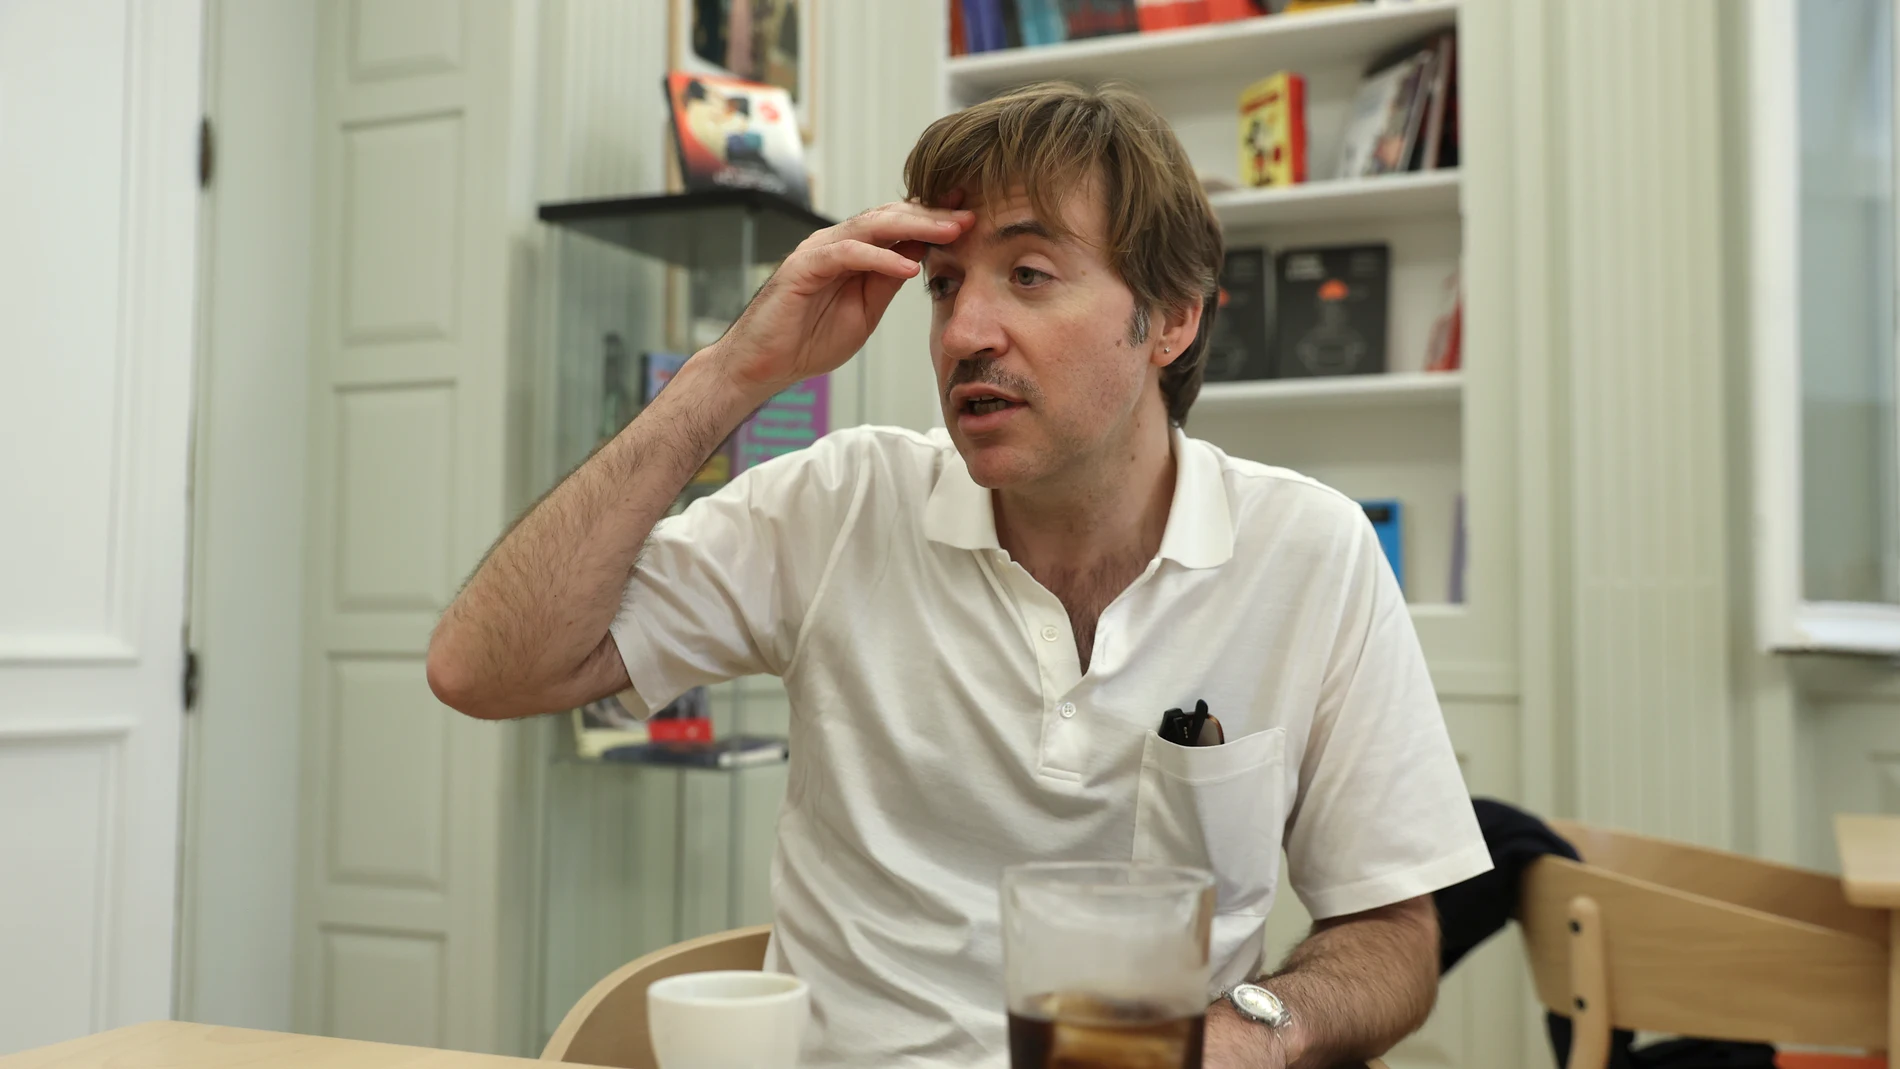 El director catalán Albert Serra, conocido por sus películas polémicas, poco convencionales, reactivas y diferentes